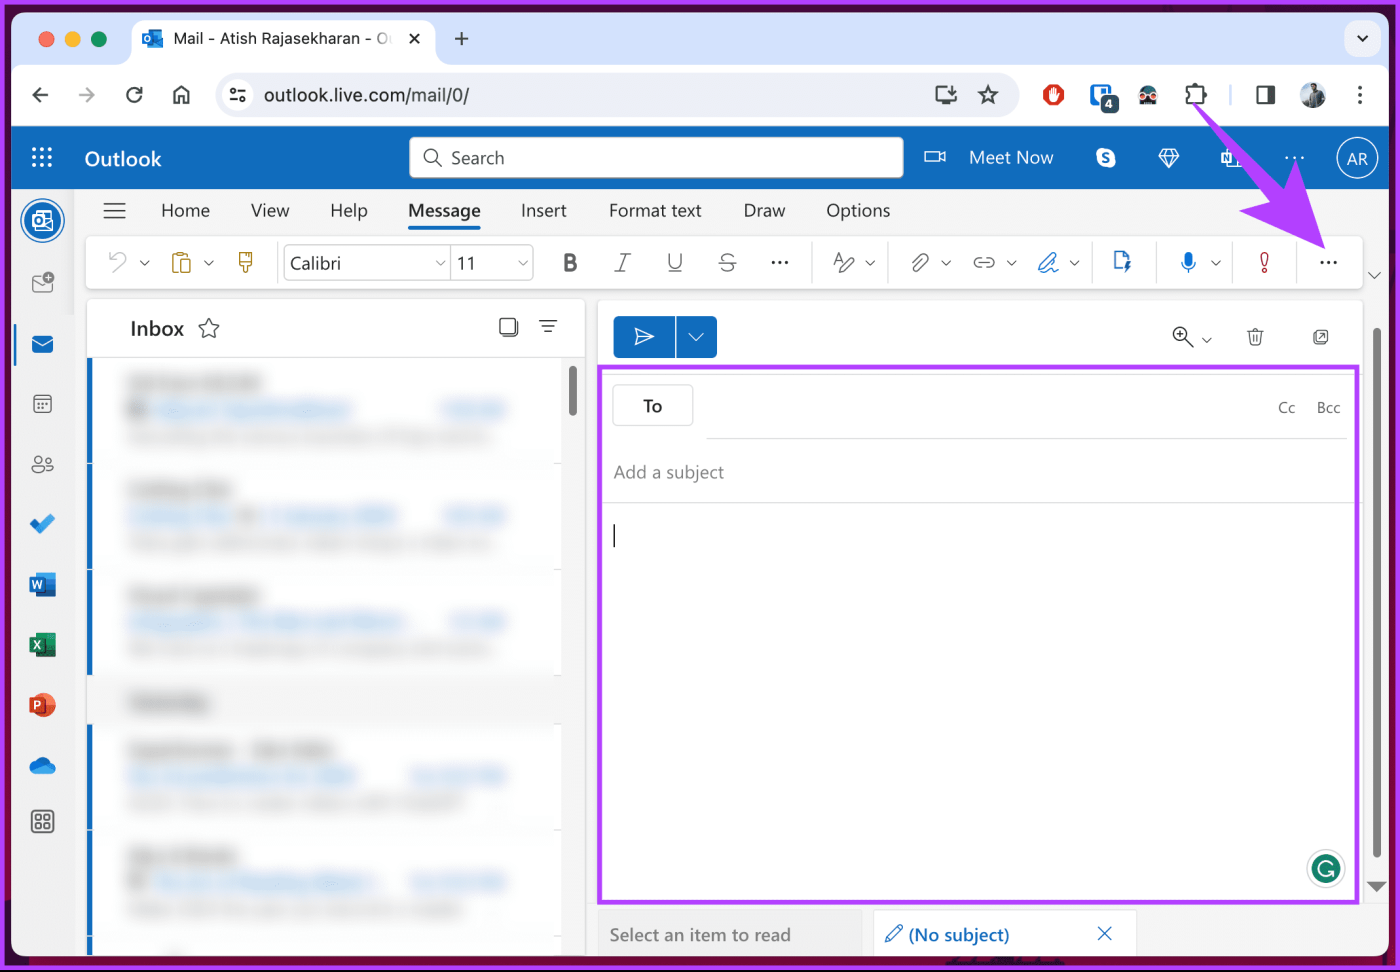 Comment insérer des émojis dans un e-mail Microsoft Outlook